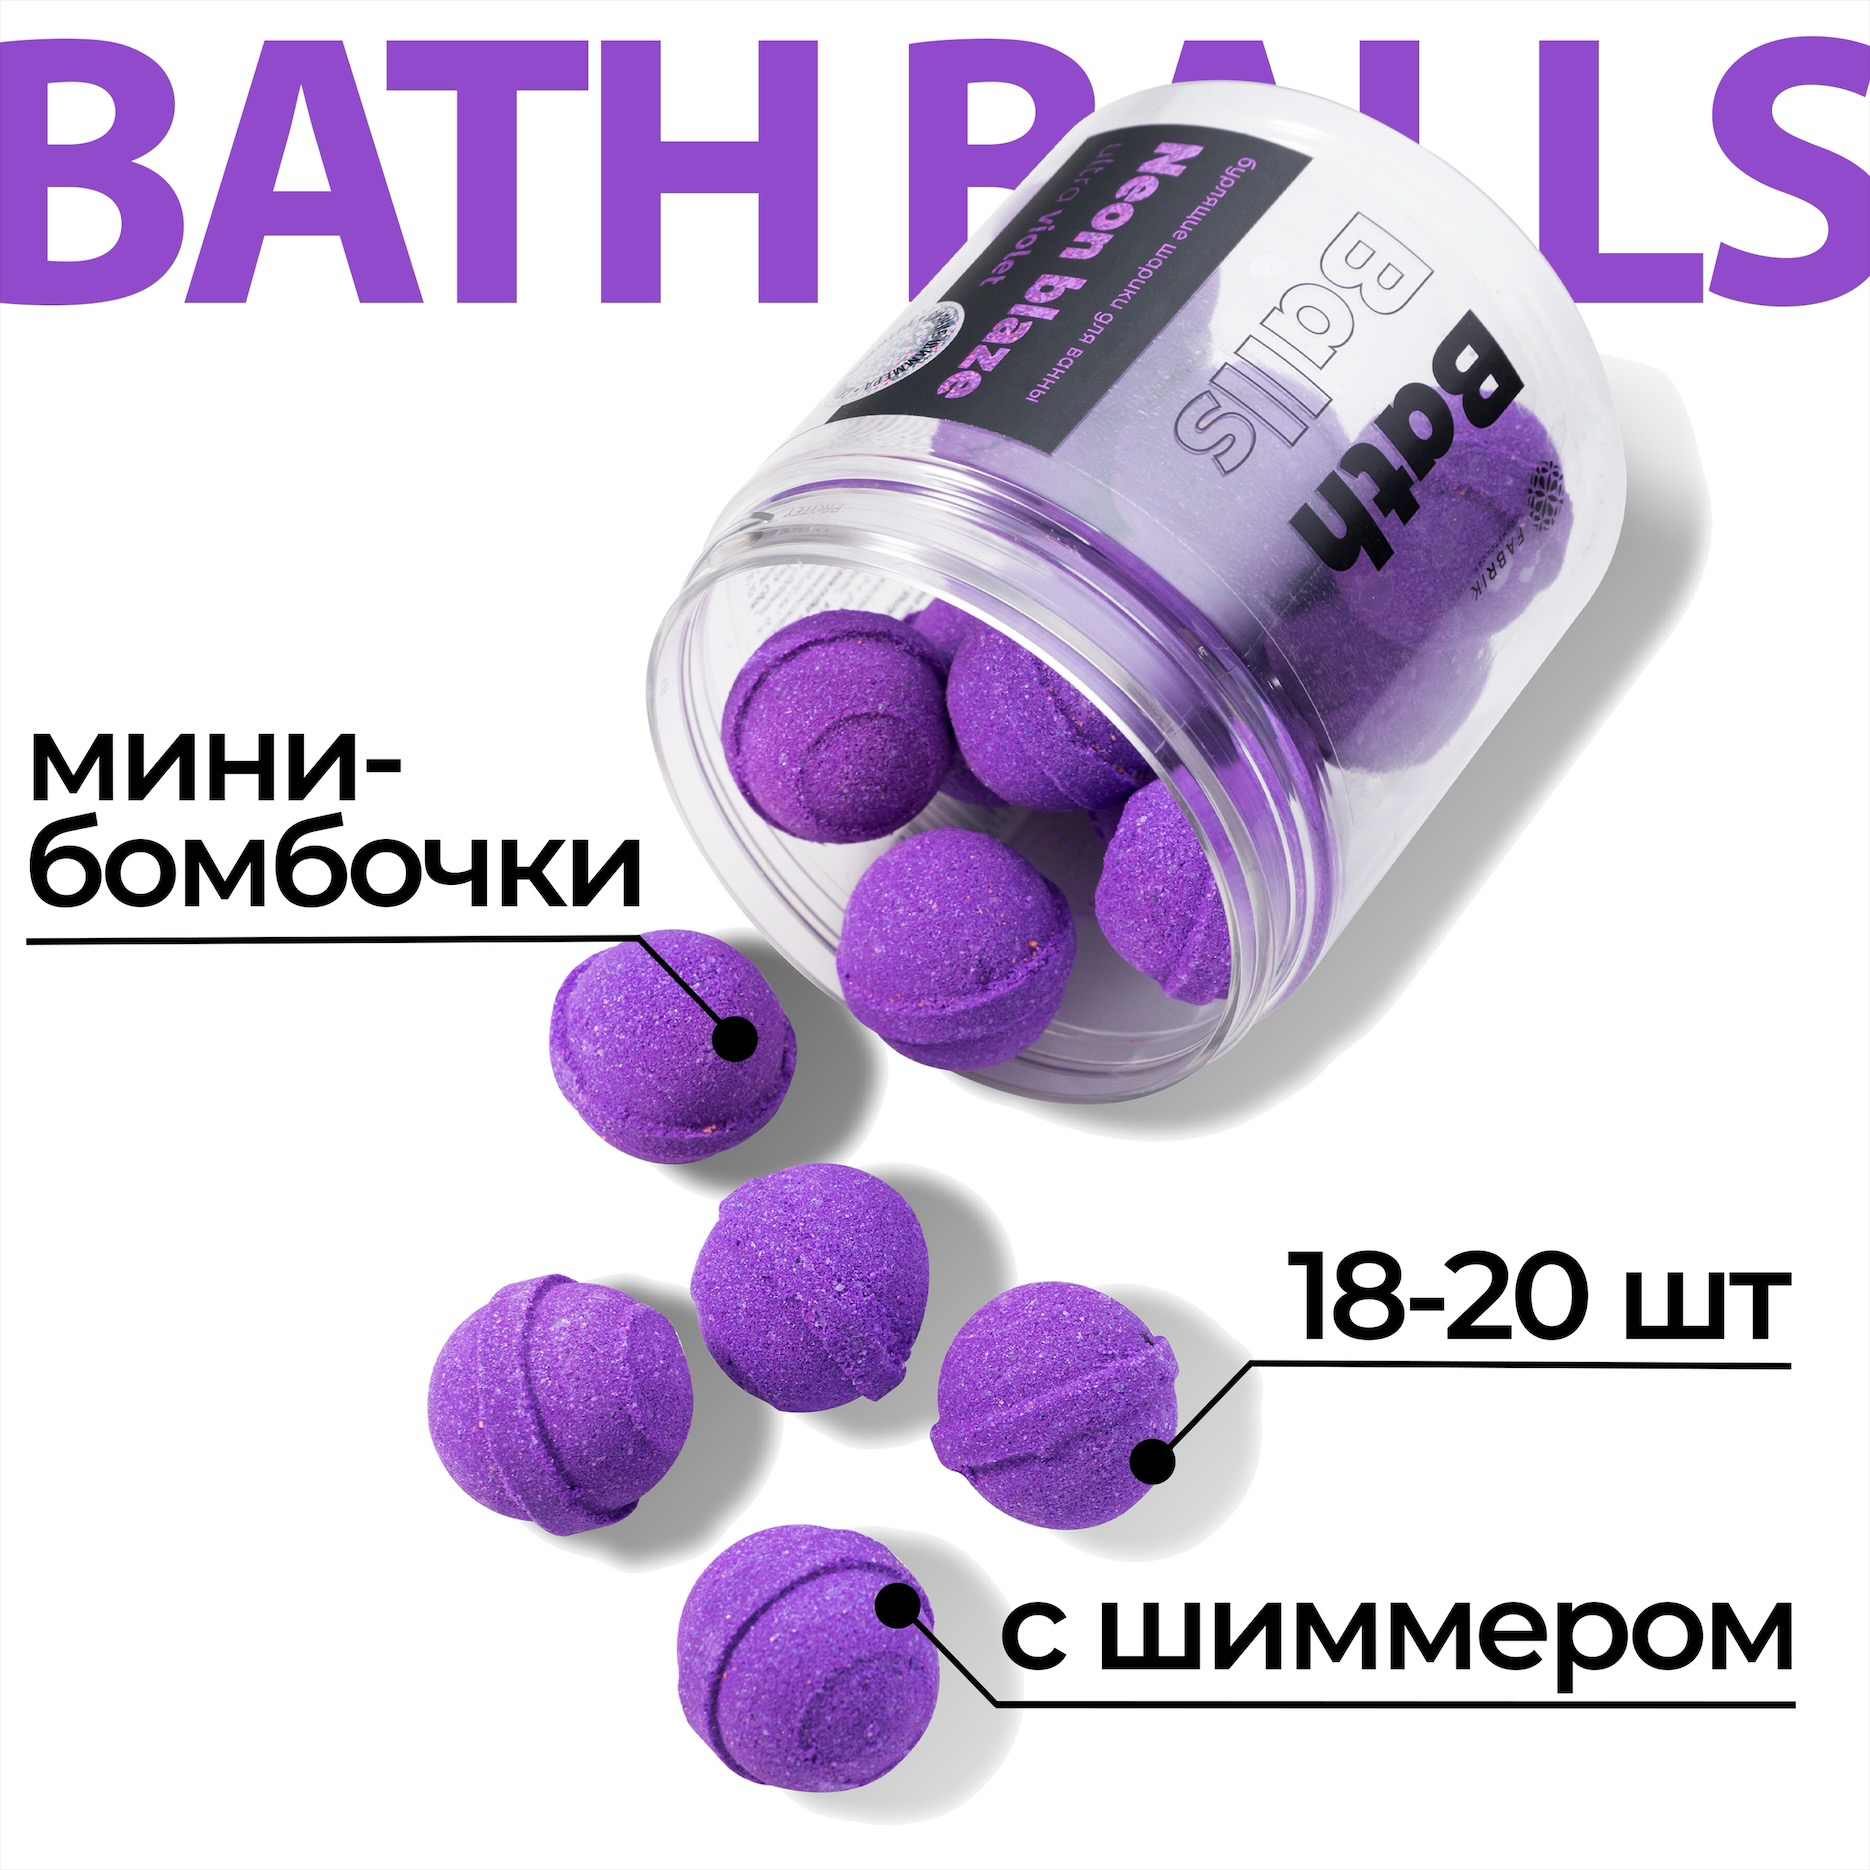 Бурлящие шарики для ванны Fabrik cosmetology Neon Blaze Ultra Violet, 300 г fabrik cosmetology жемчуг для ванны neon blaze ultra violet 320 гр